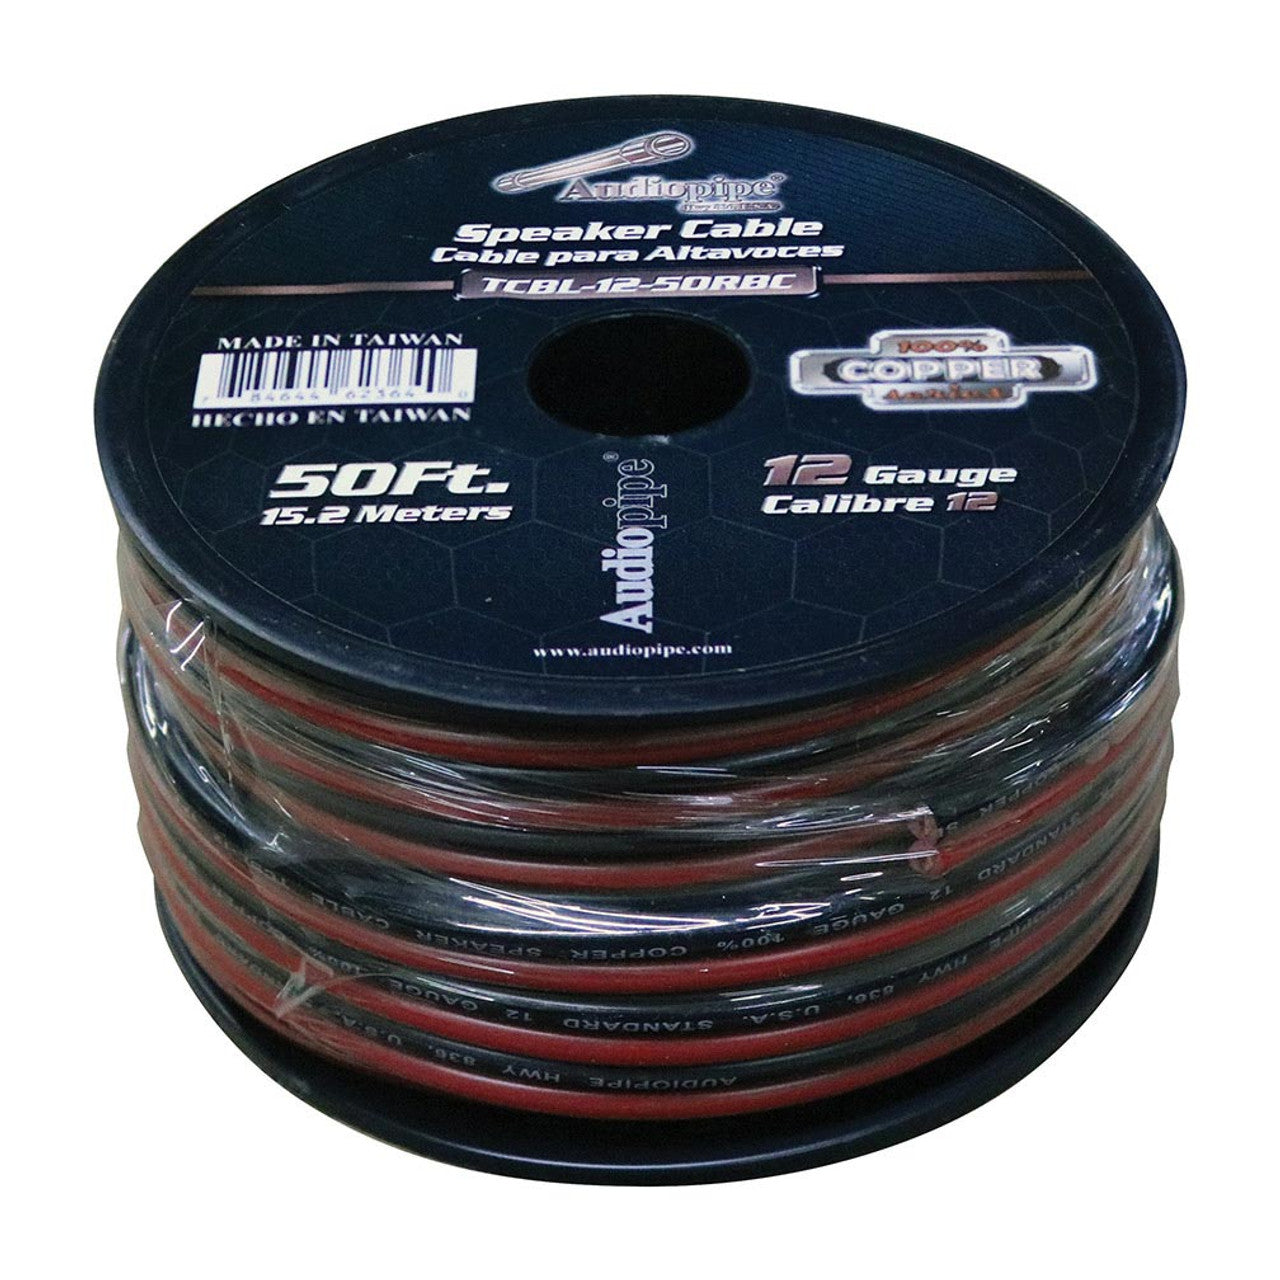 Audiopipe TCBL1250RBC 12 Gauge 100% Copper Series Speaker Wire - 50 Foot Roll - RED/BLACK Jacket